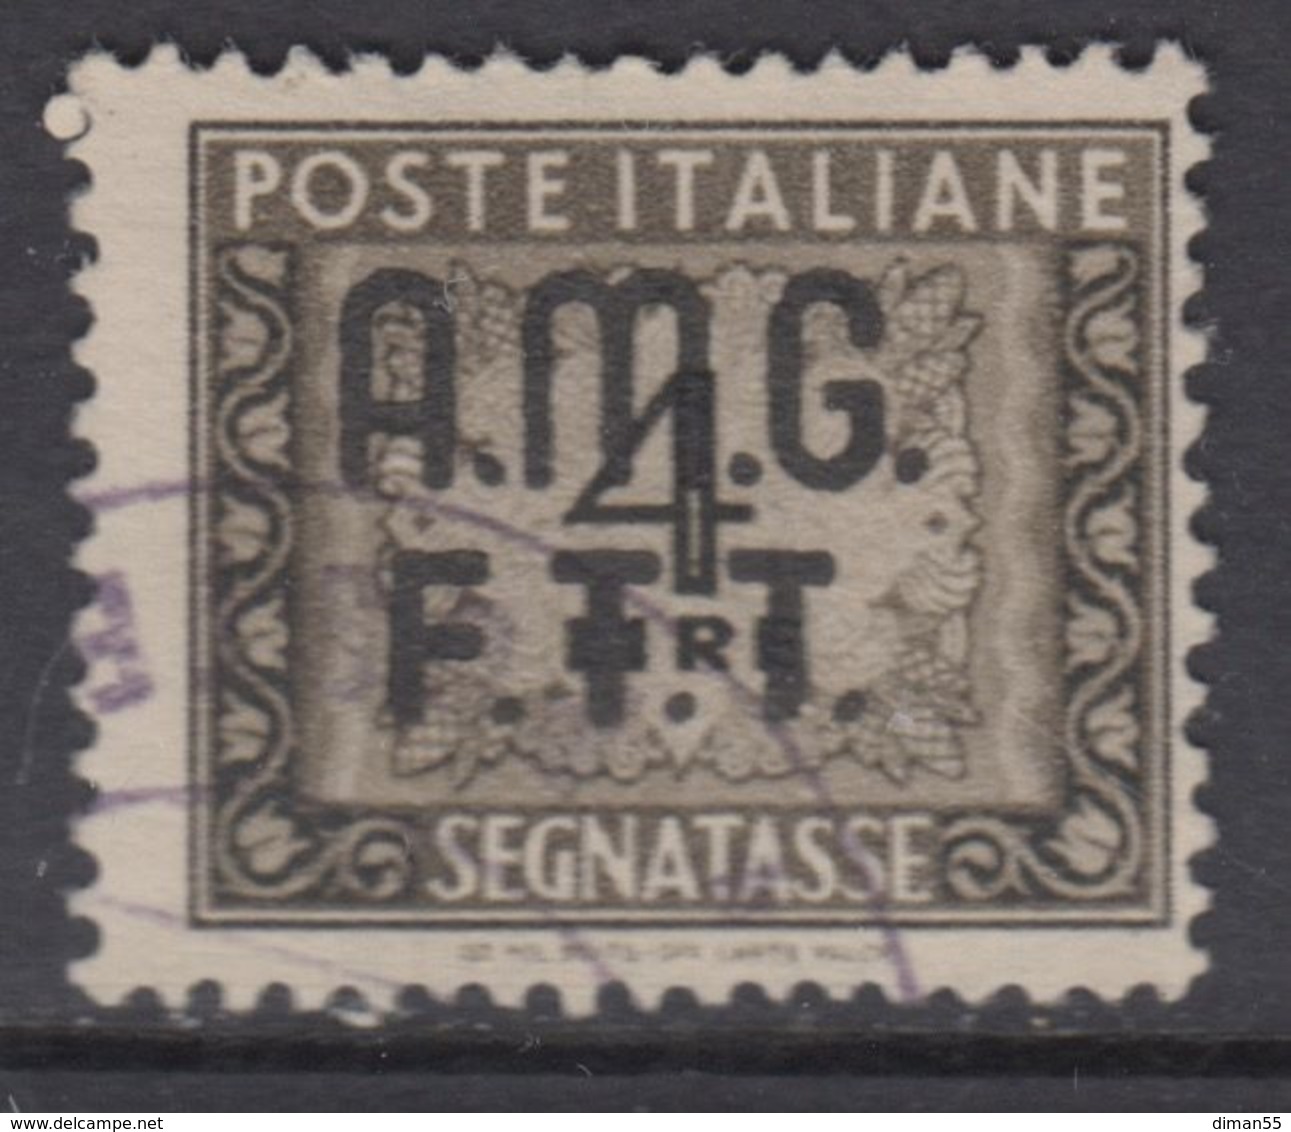 Trieste Zona A - AMG-FTT - Segnatasse N.8 - Cat. 70 Euro  - Usato - Luxus Postfrisch - Postage Due